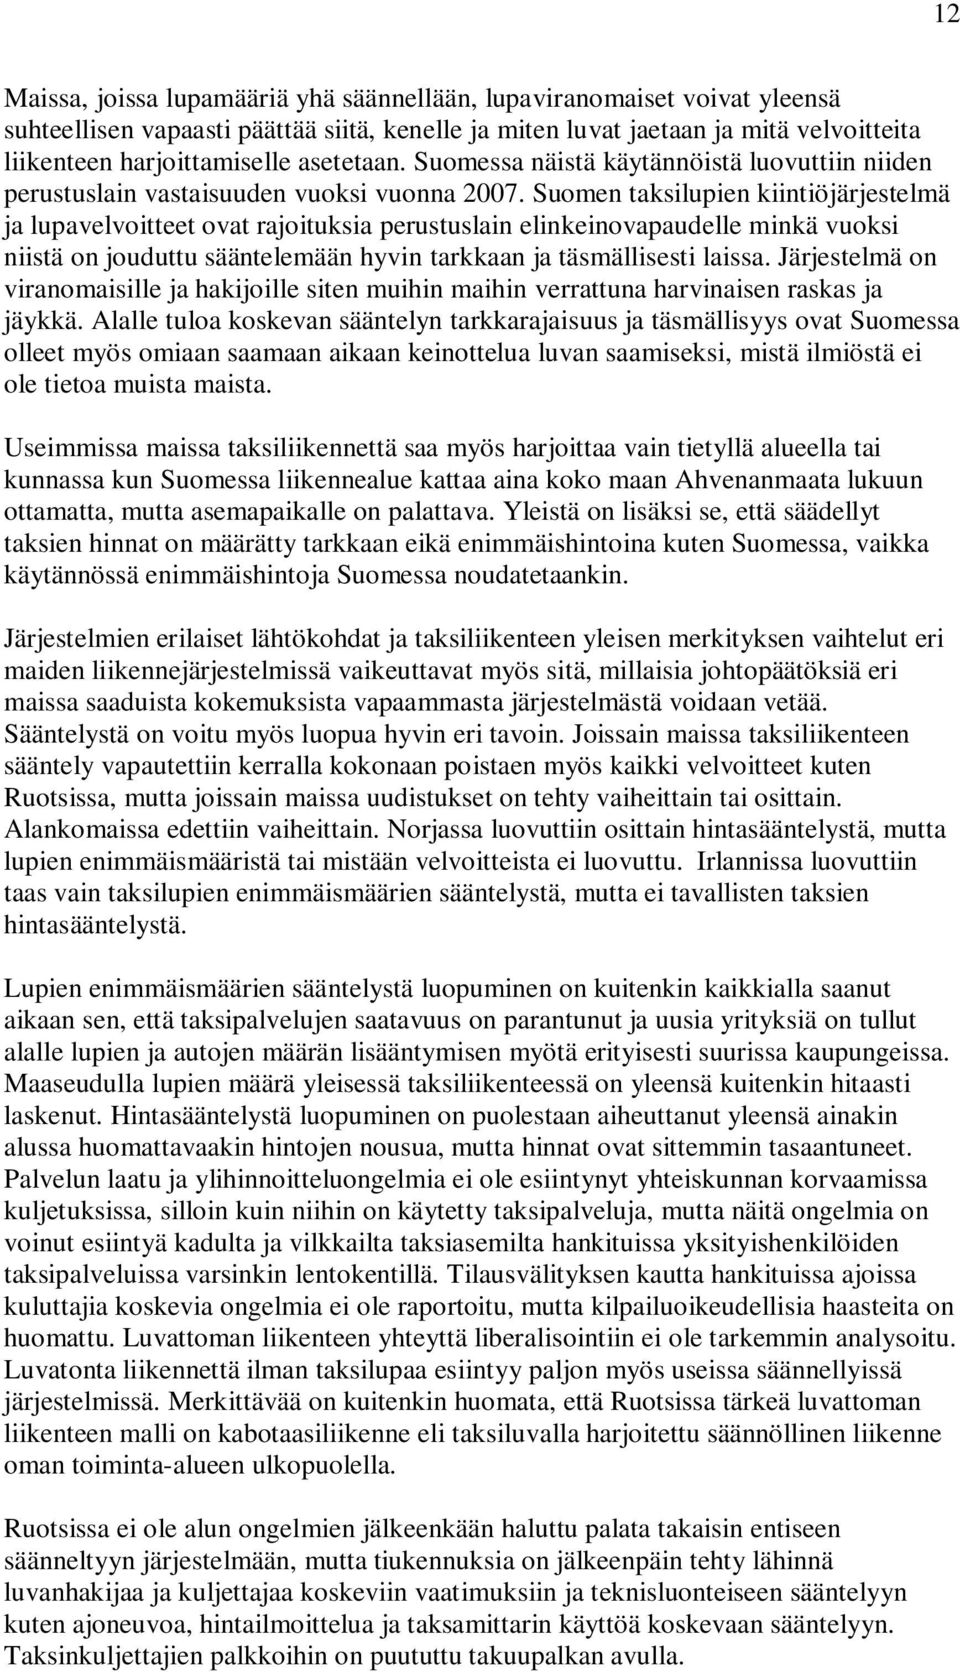 Suomen taksilupien kiintiöjärjestelmä ja lupavelvoitteet ovat rajoituksia perustuslain elinkeinovapaudelle minkä vuoksi niistä on jouduttu sääntelemään hyvin tarkkaan ja täsmällisesti laissa.